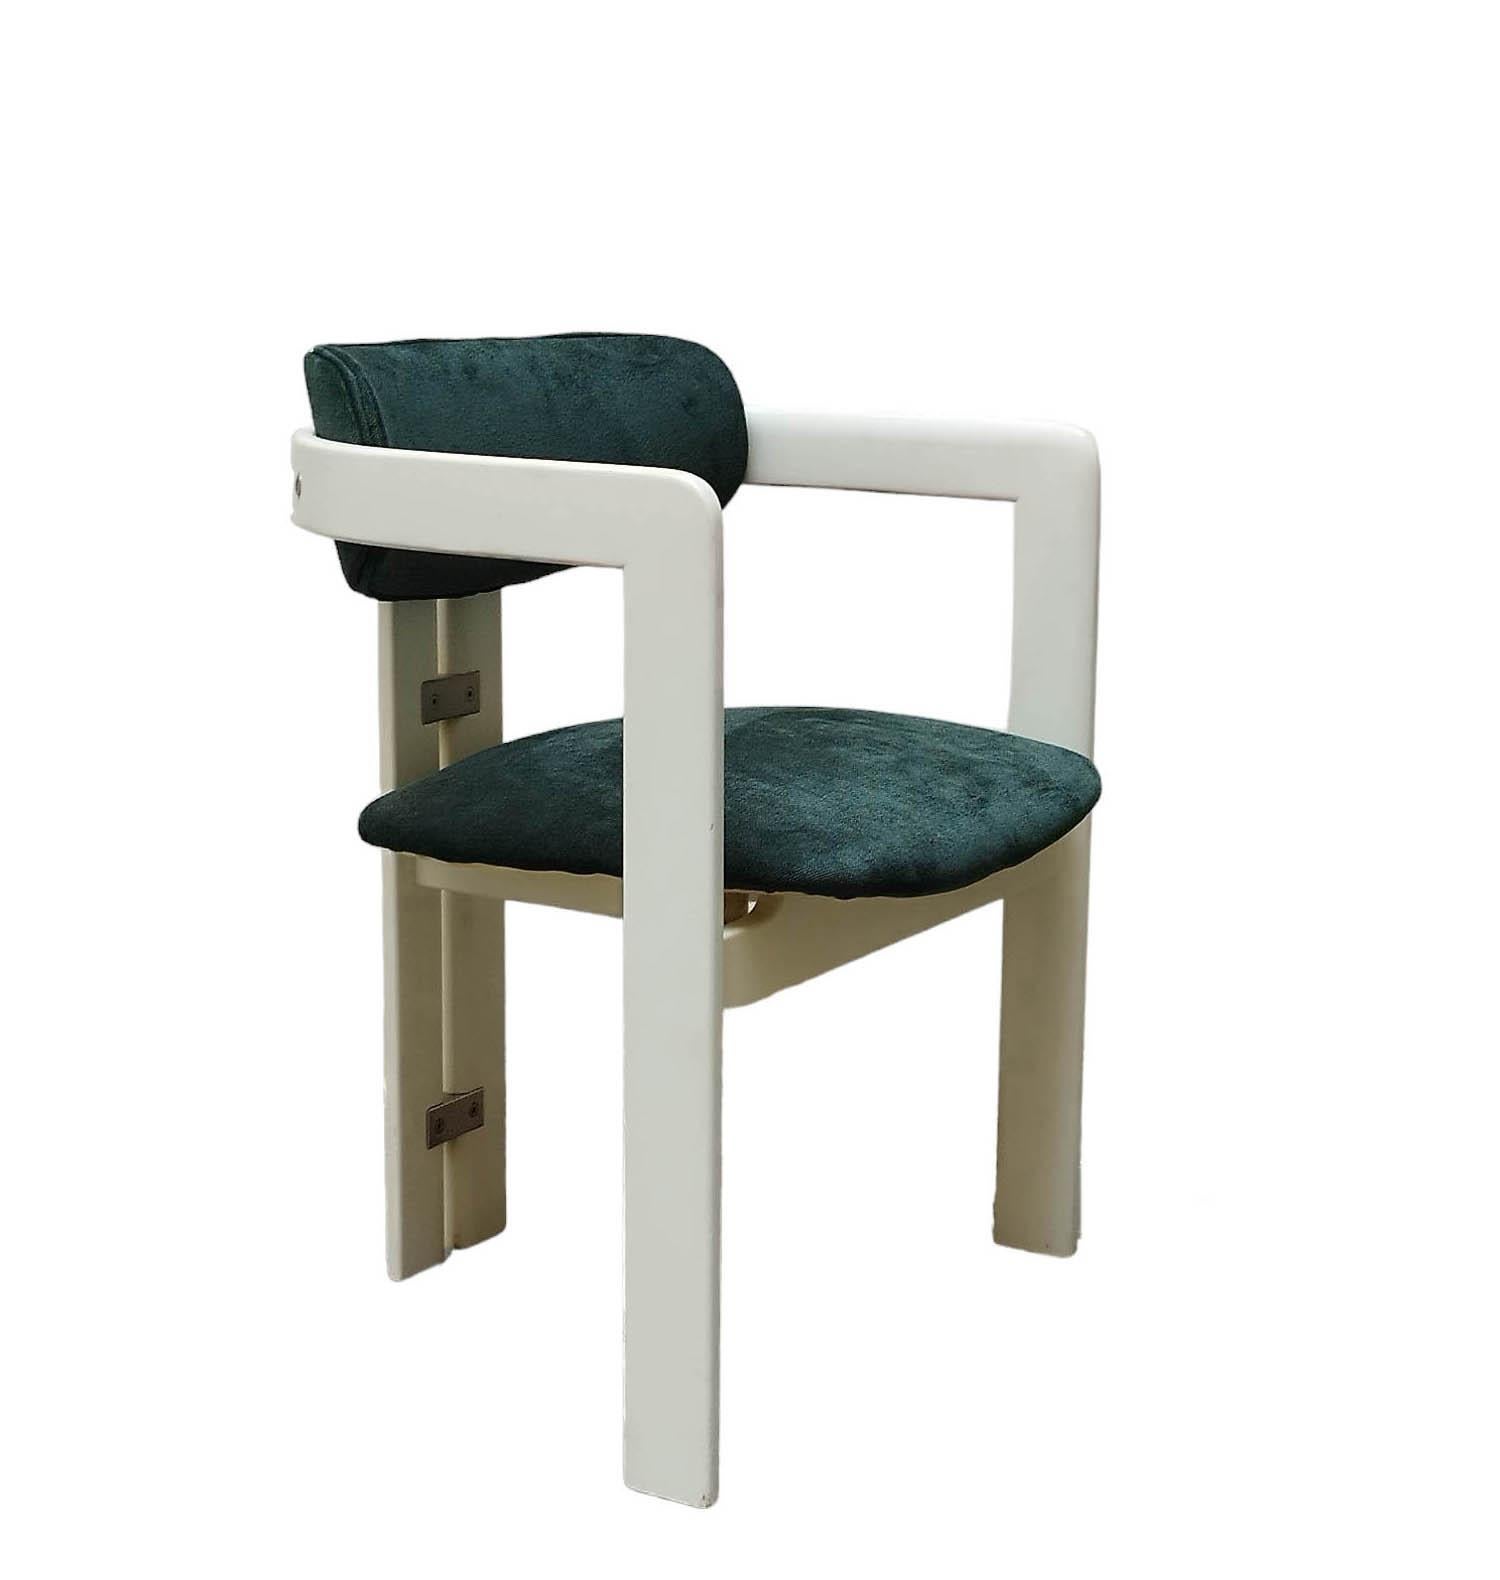 Der von Augusto Savini in den 1960er Jahren entworfene Stuhl Pampelona ist ein Modell, das für seinen massiven Holzrahmen geschätzt wird, der zwei Bögen an den hinteren Füßen bildet und mit Stahlteilen verbunden ist.
Sitz und Rückenlehne sind mit